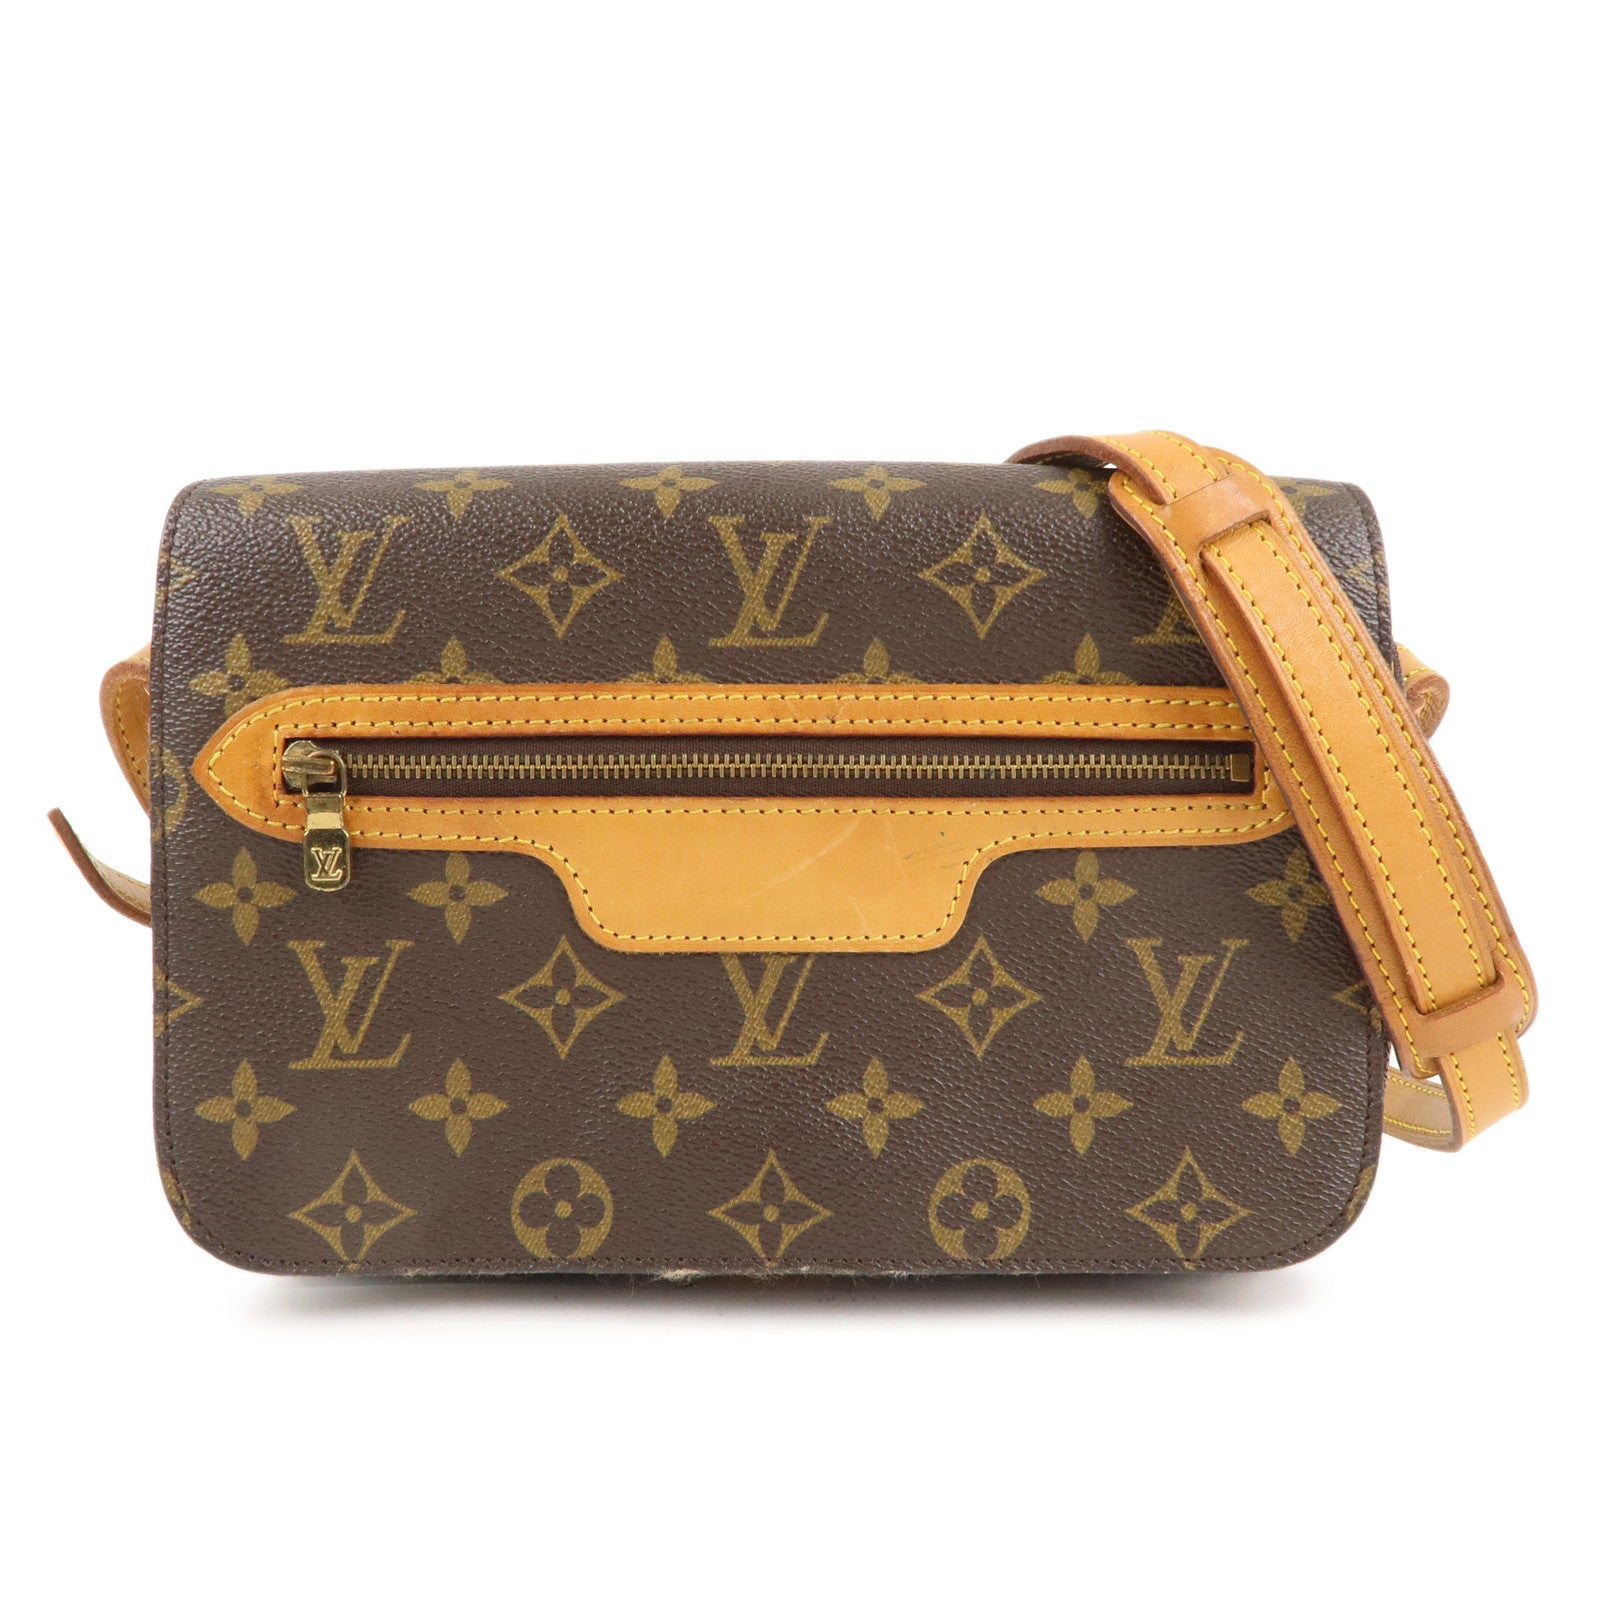 Louis Vuitton Monogram Canvas Shoulder Bag on SALE